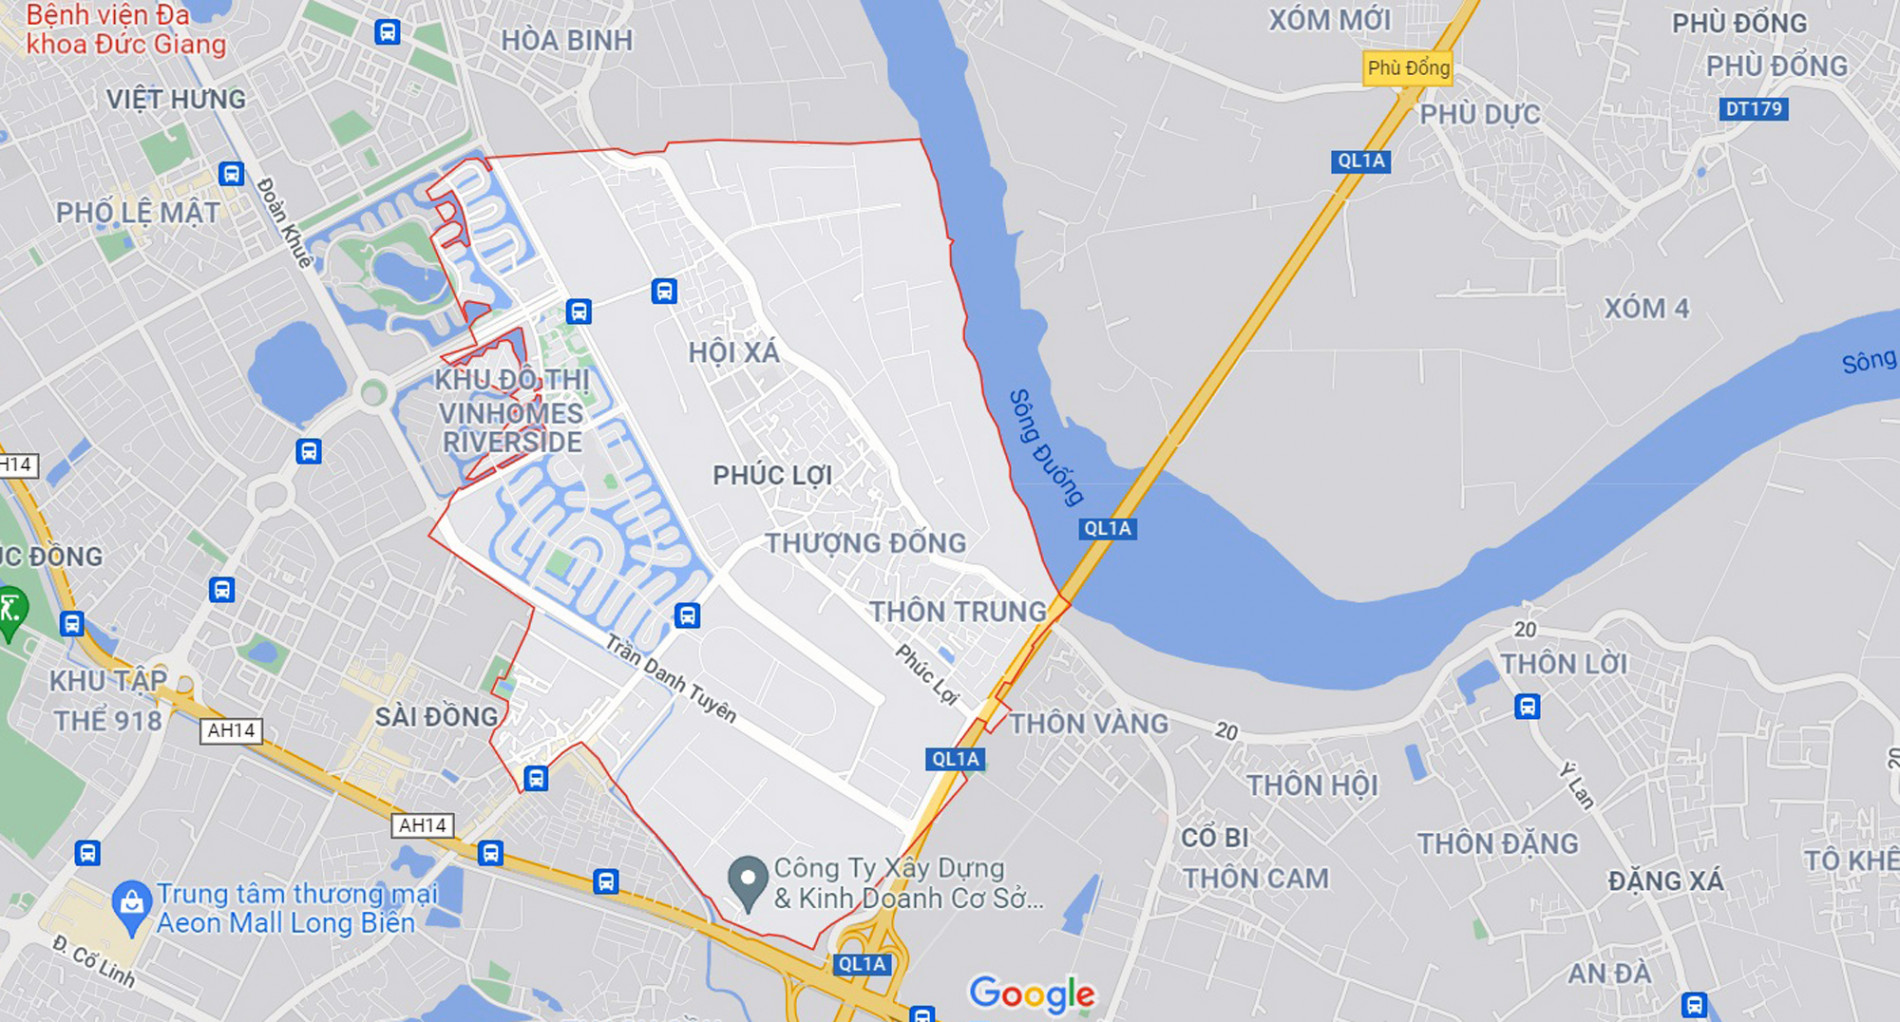 Những khu đất sắp thu hồi để mở đường ở phường Phúc Lợi, Long Biên, Hà Nội (phần 6) - Ảnh 1.